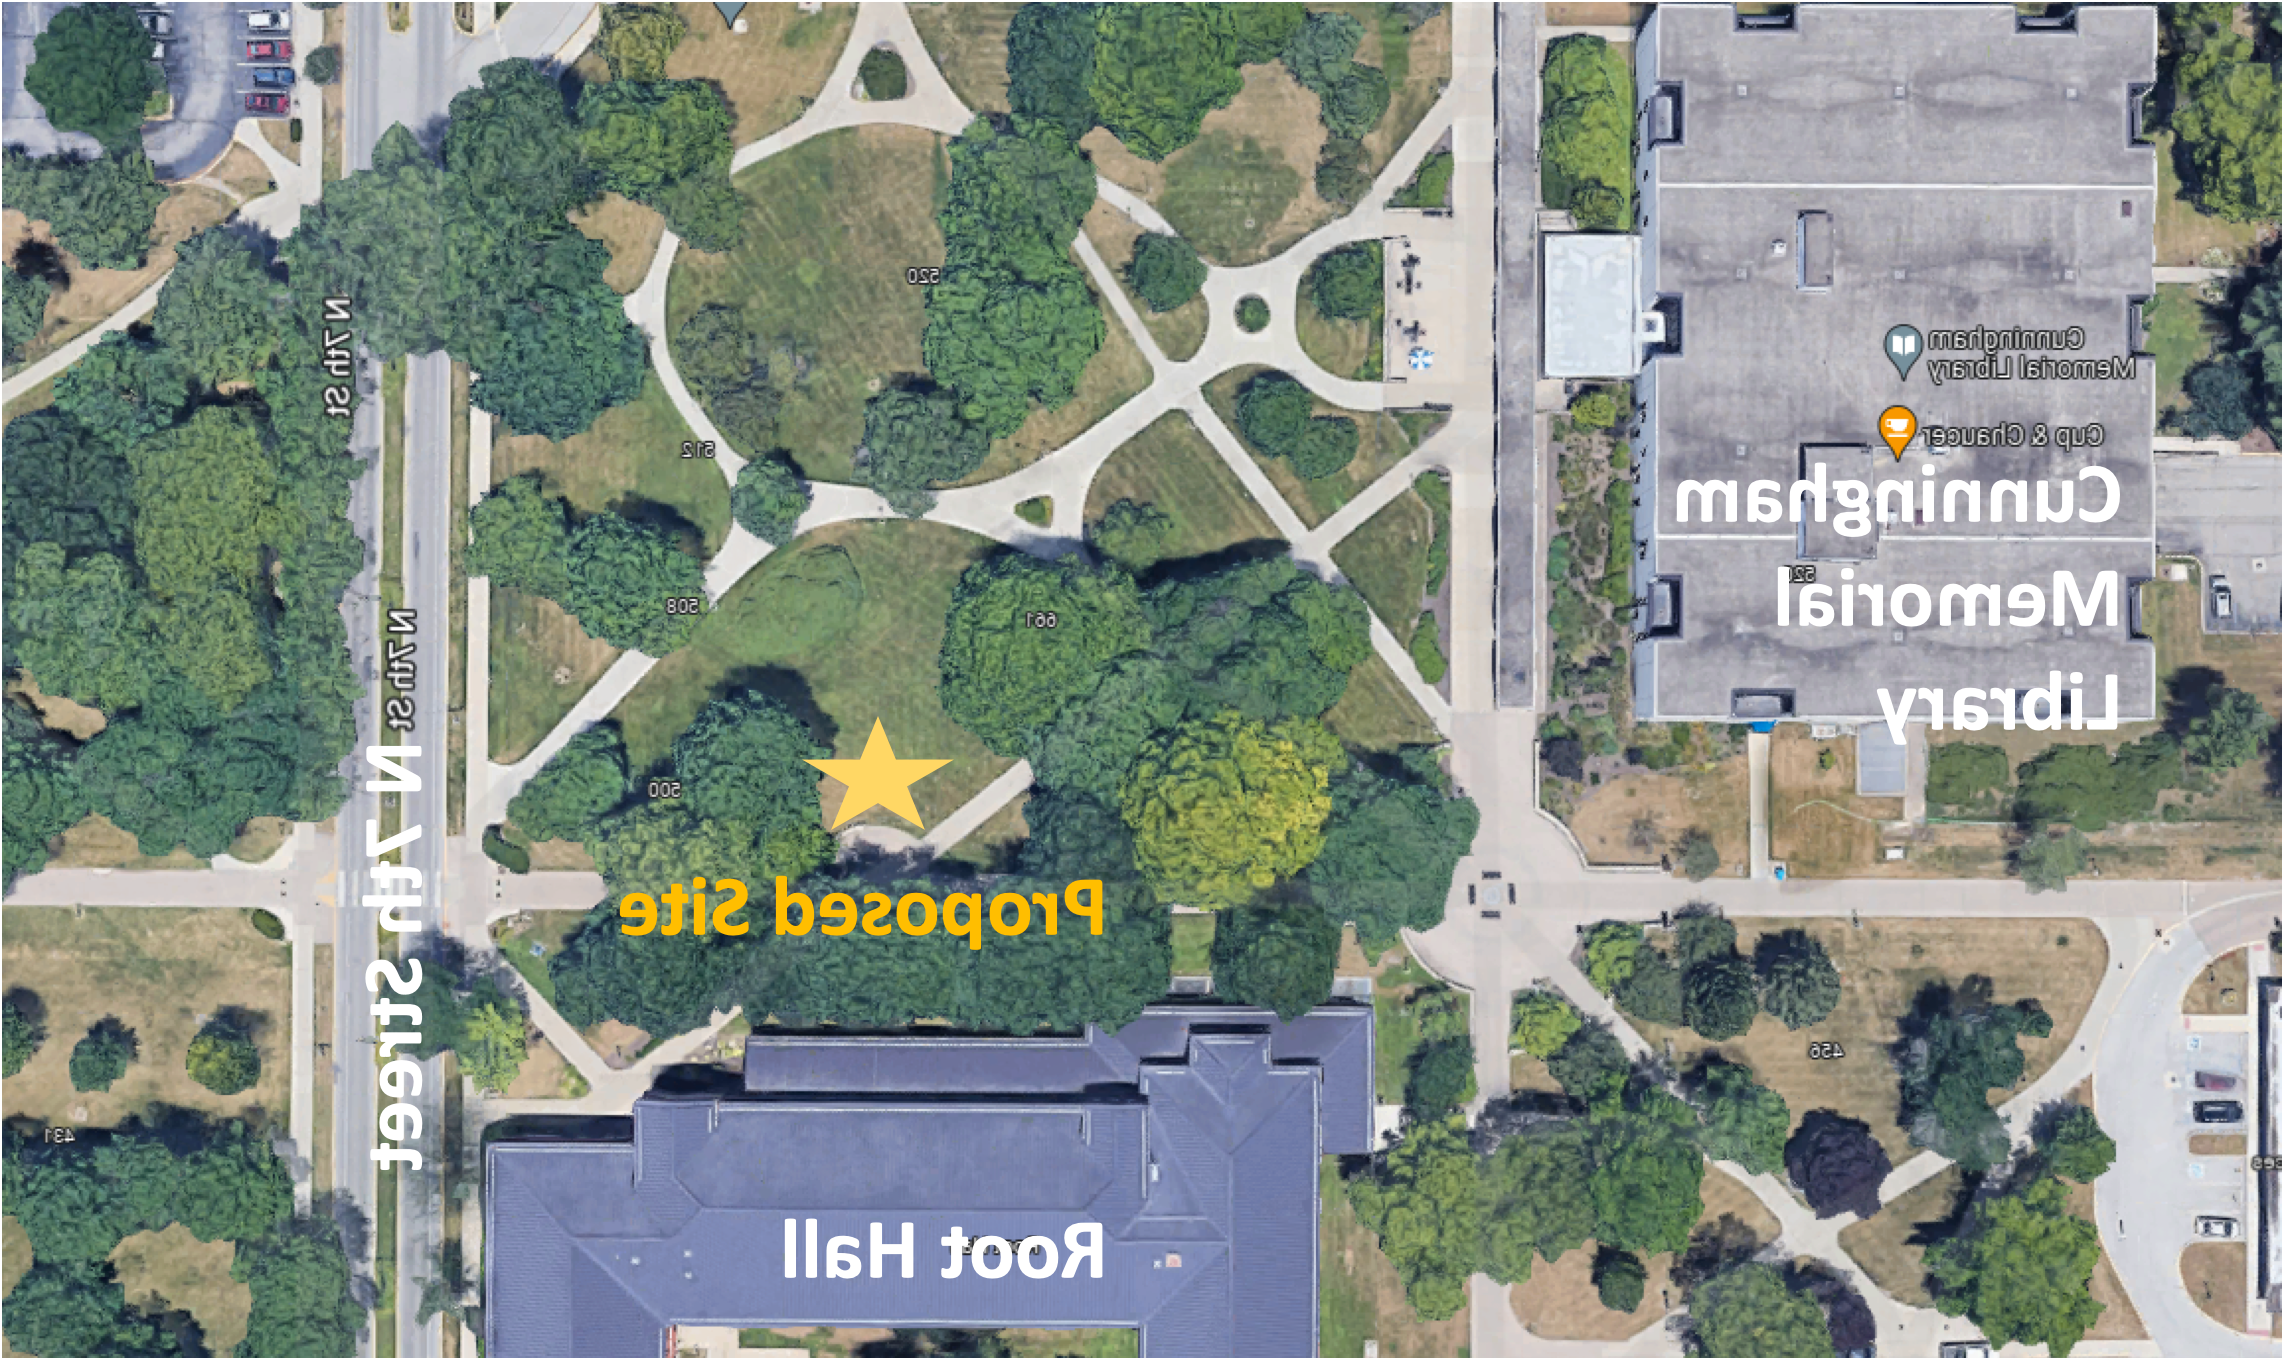 地图显示位于根厅附近的新泛希腊议会广场的位置